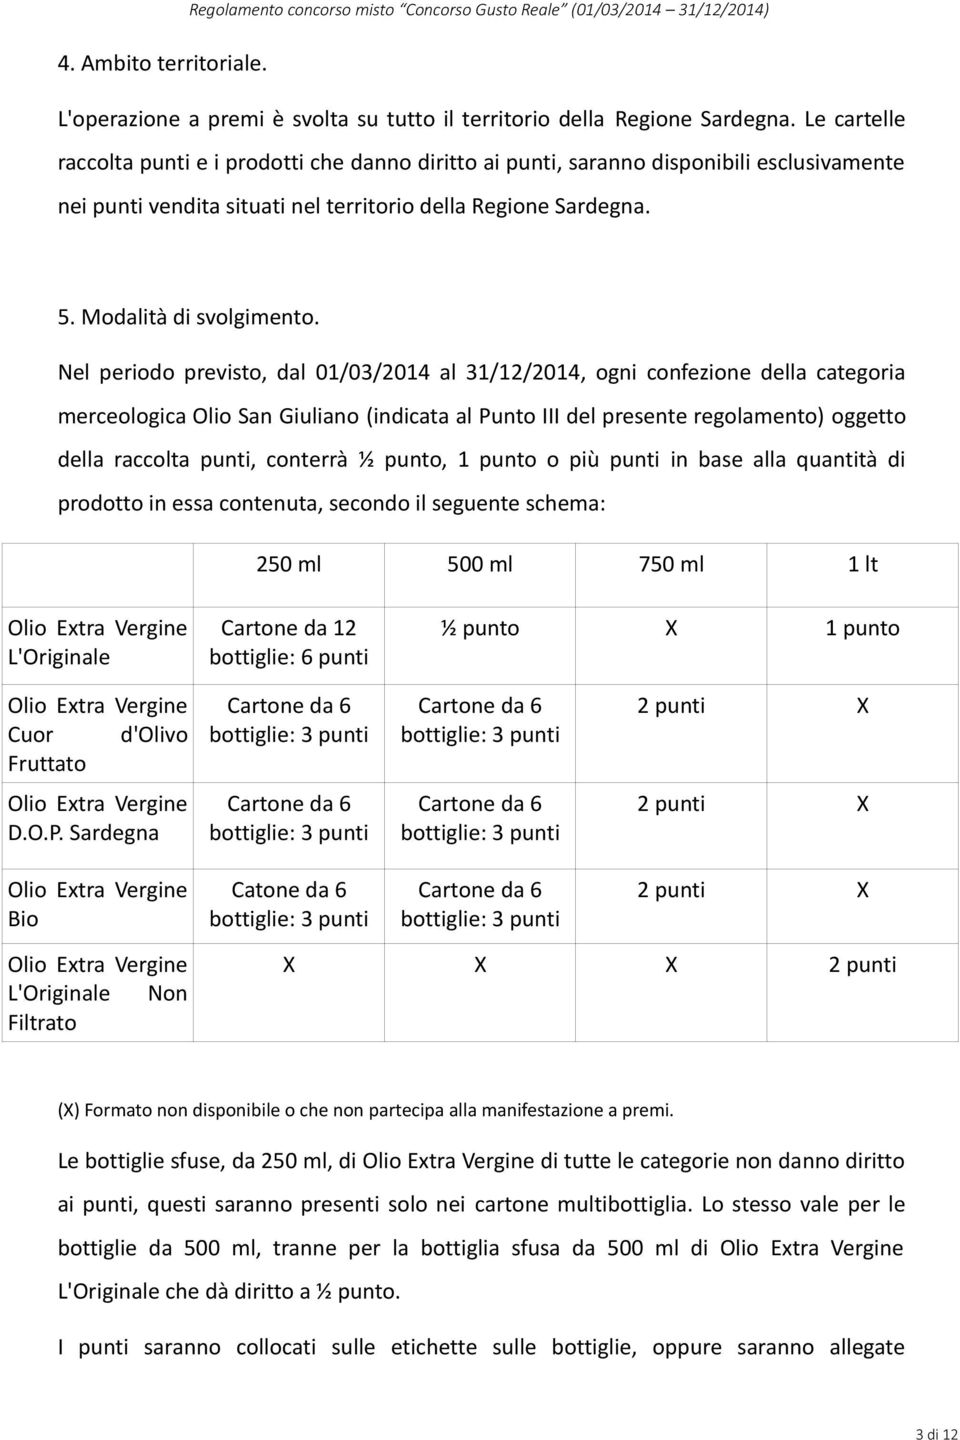 Nel periodo previsto, dal 01/03/2014 al 31/12/2014, ogni confezione della categoria merceologica Olio San Giuliano (indicata al Punto III del presente regolamento) oggetto della raccolta punti,